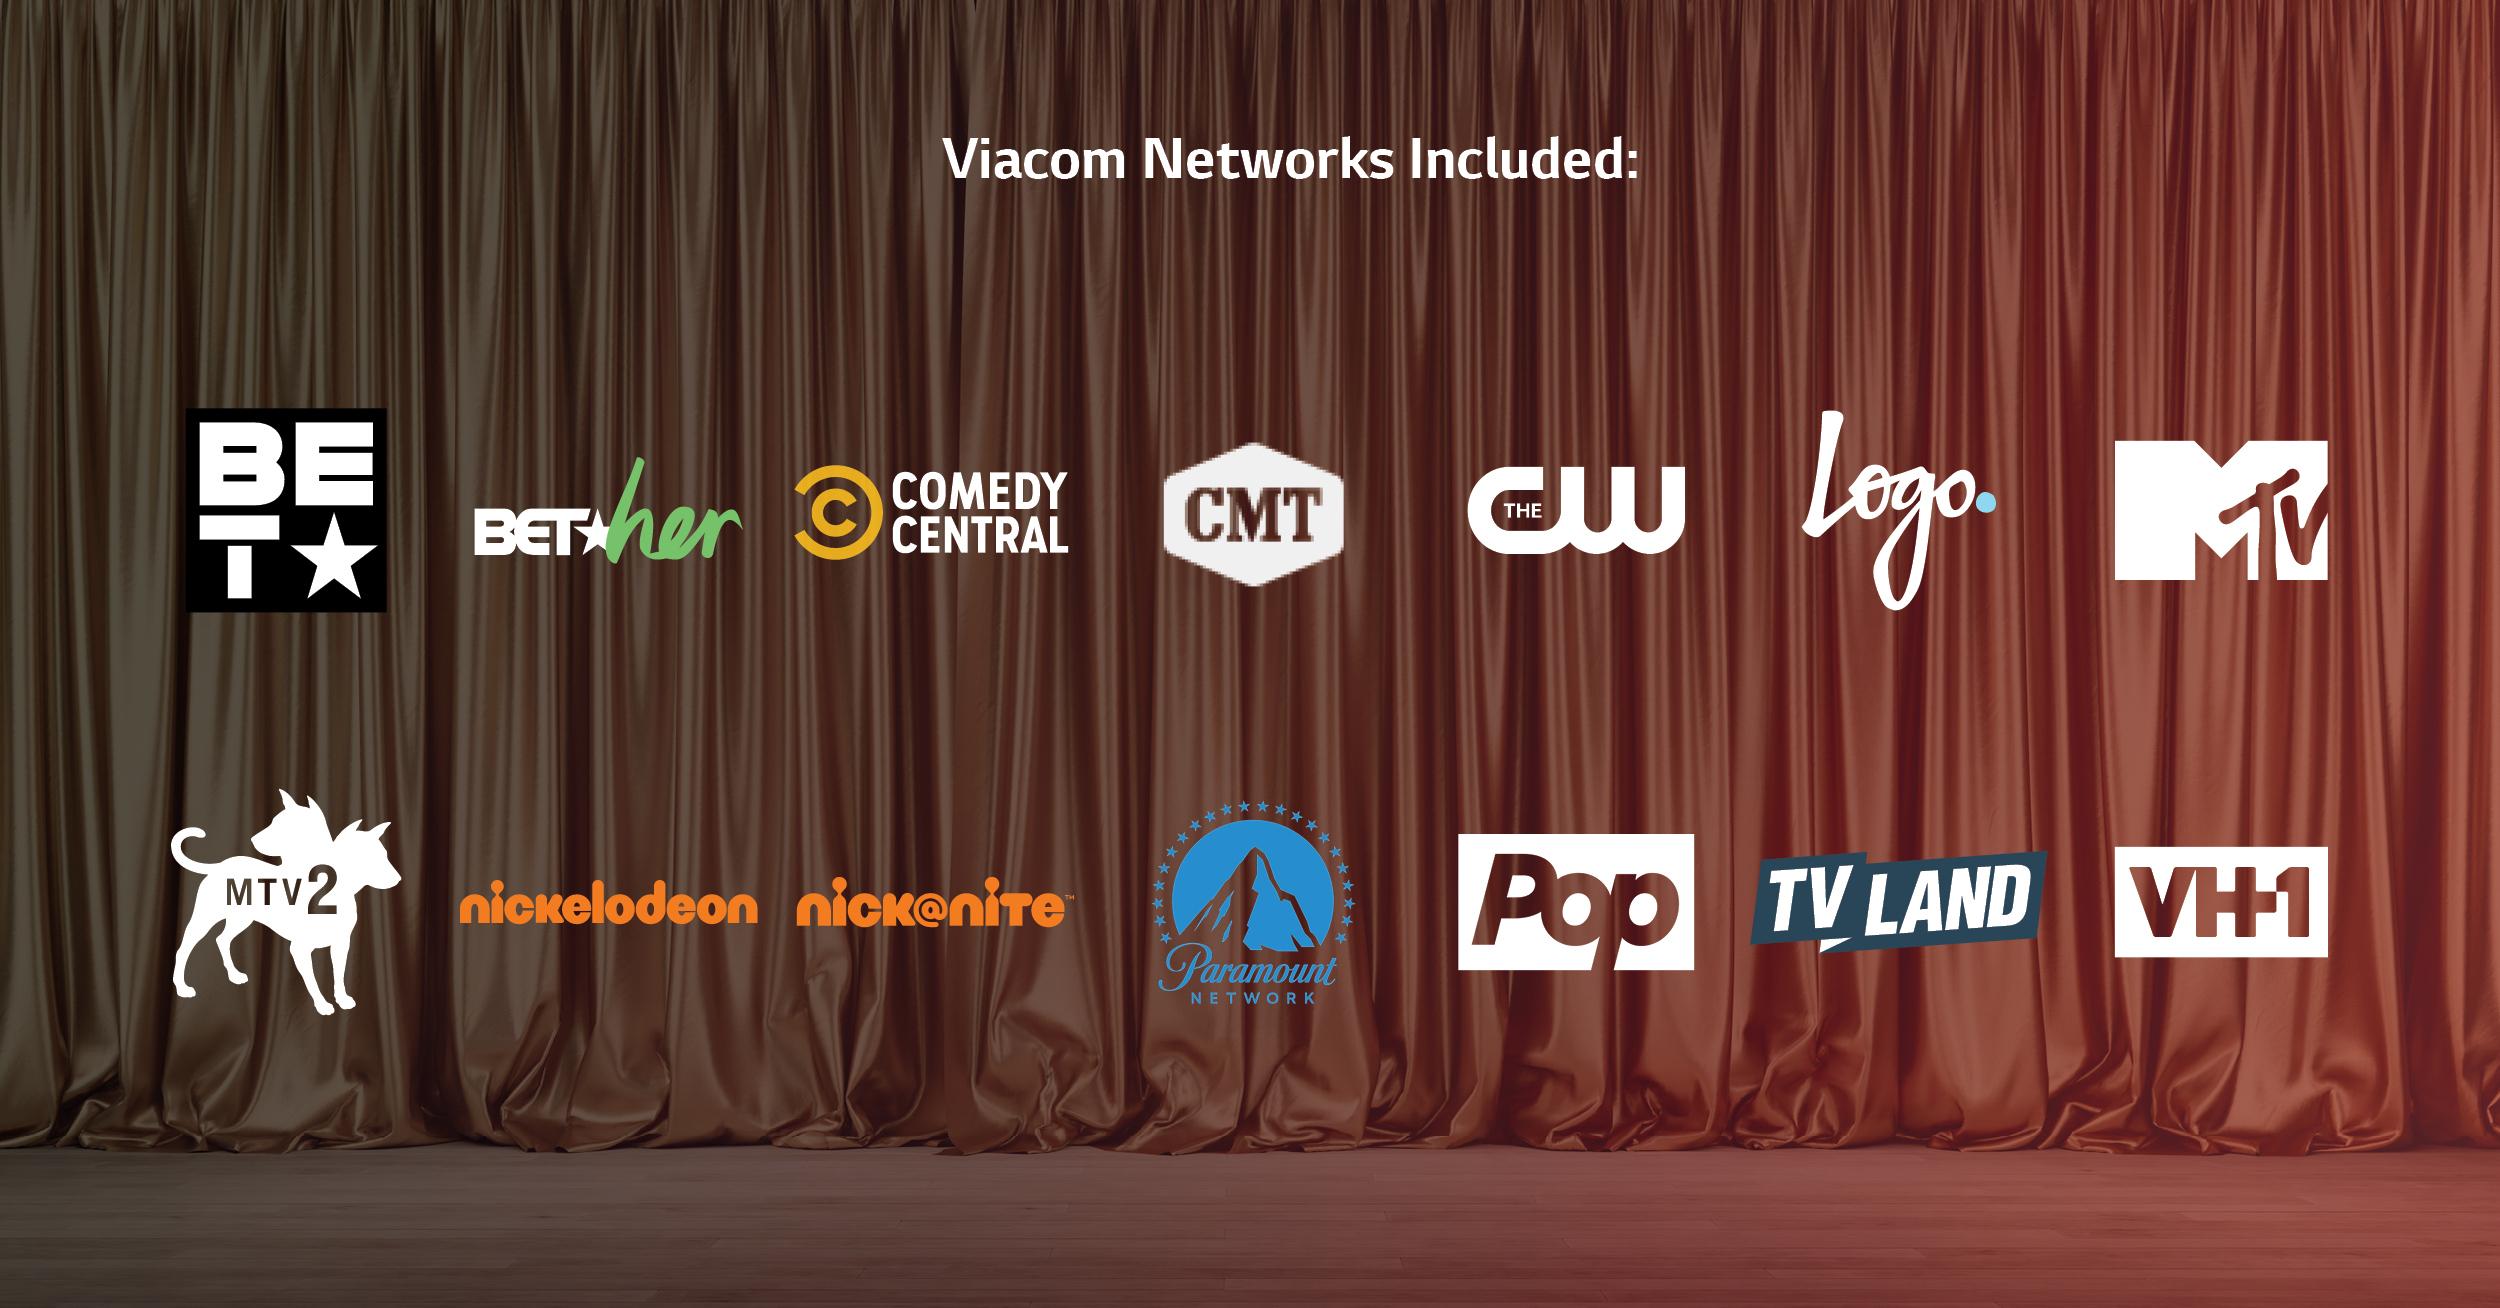 LG Ads Viacom Network Logos